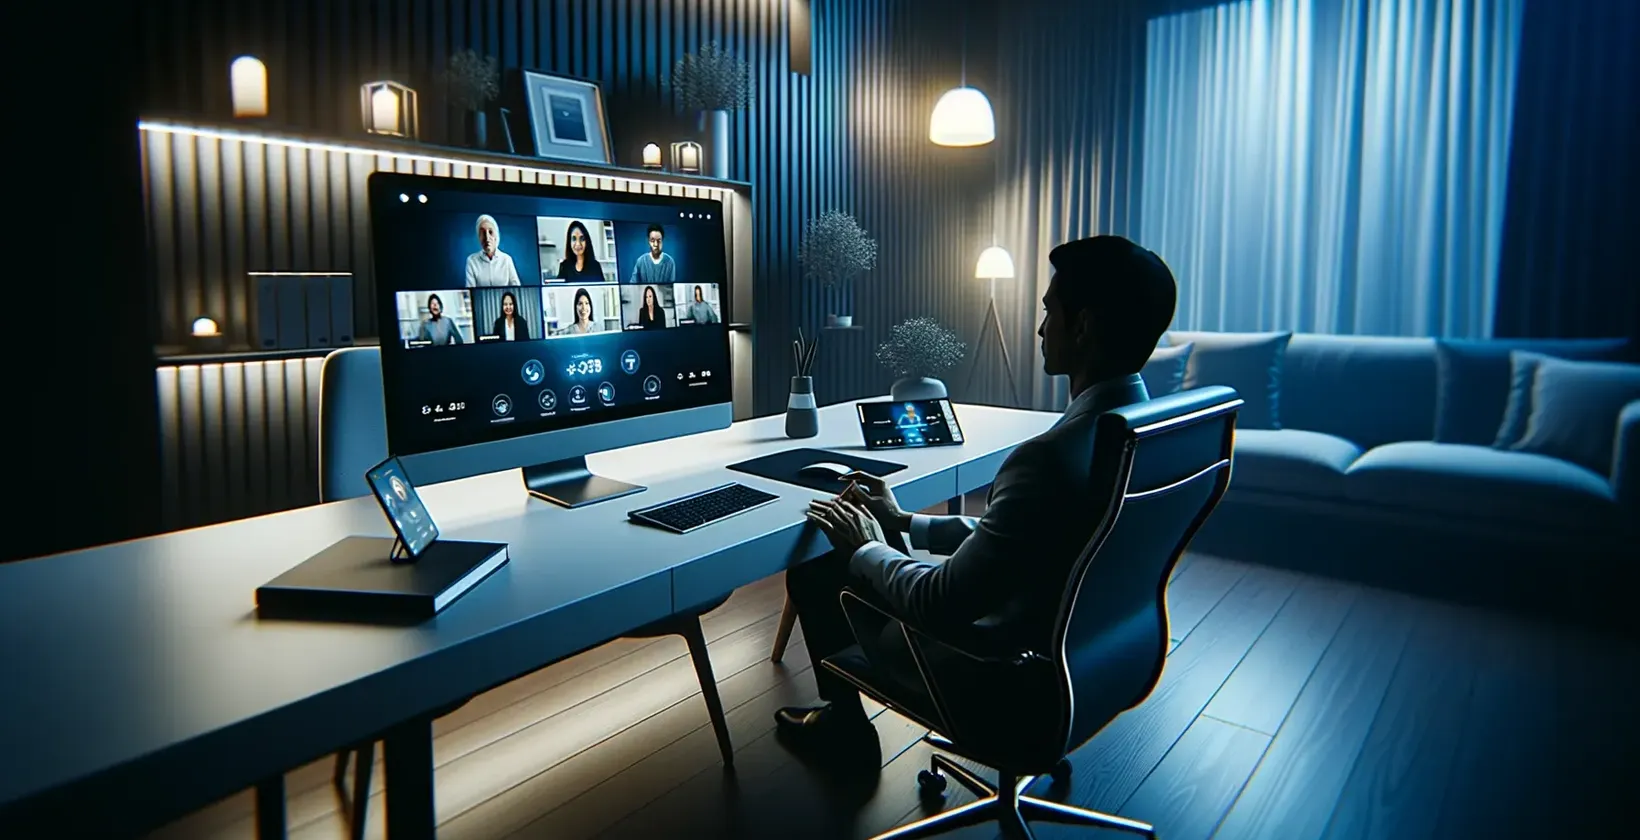 Osoba w stroju formalnym przy biurku, patrząca na Google Meet transkrypcję spotkań na ekranie.